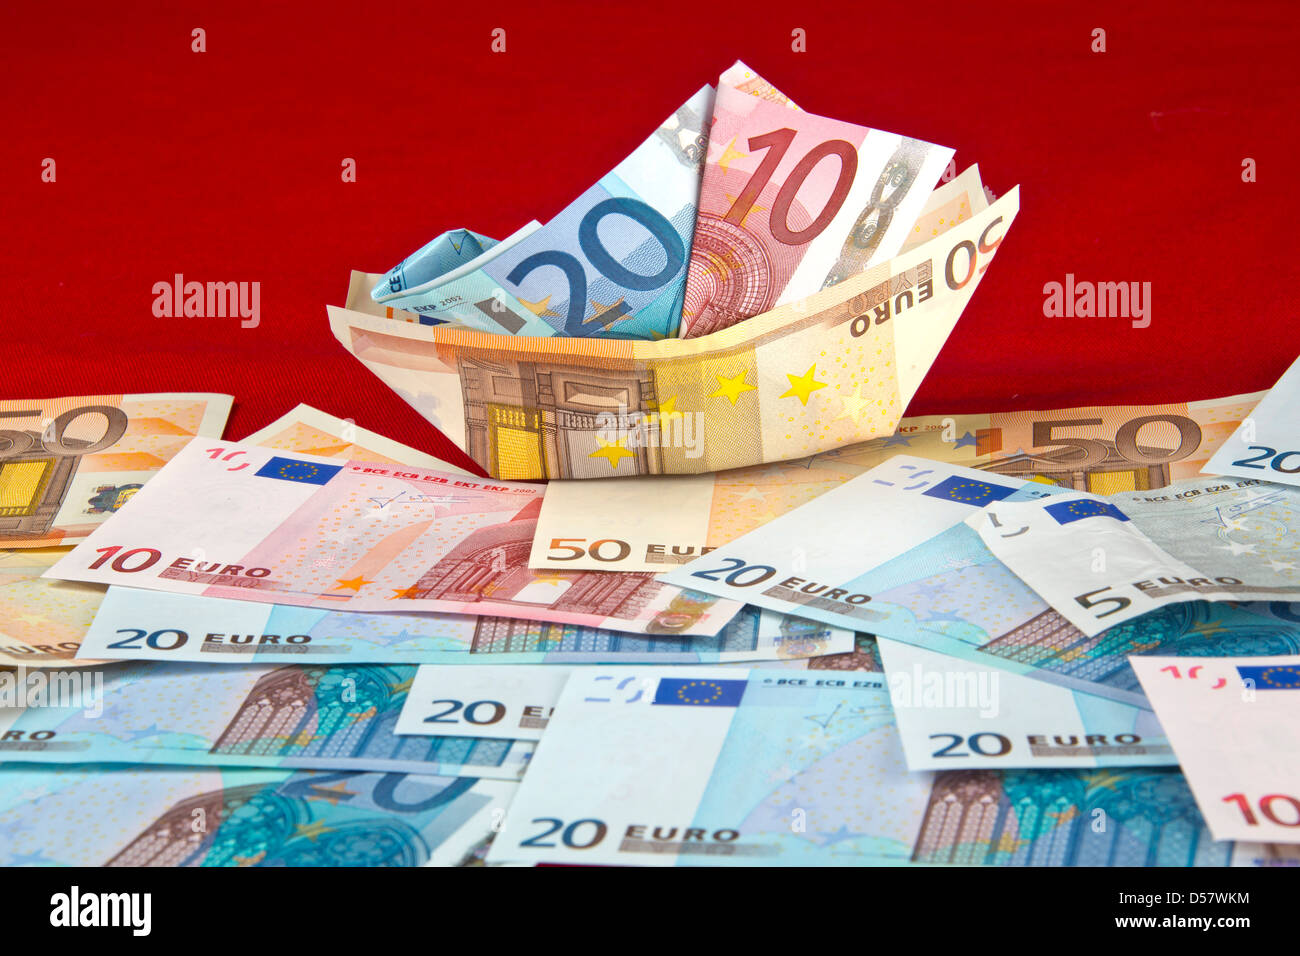 Billets de banque euros. paper boat argent.zone euro, curency européenne, monnaie flottante, le papier de l'argent comptant. €5 €10 €20 €50 euros euros euros 135177 Banque D'Images